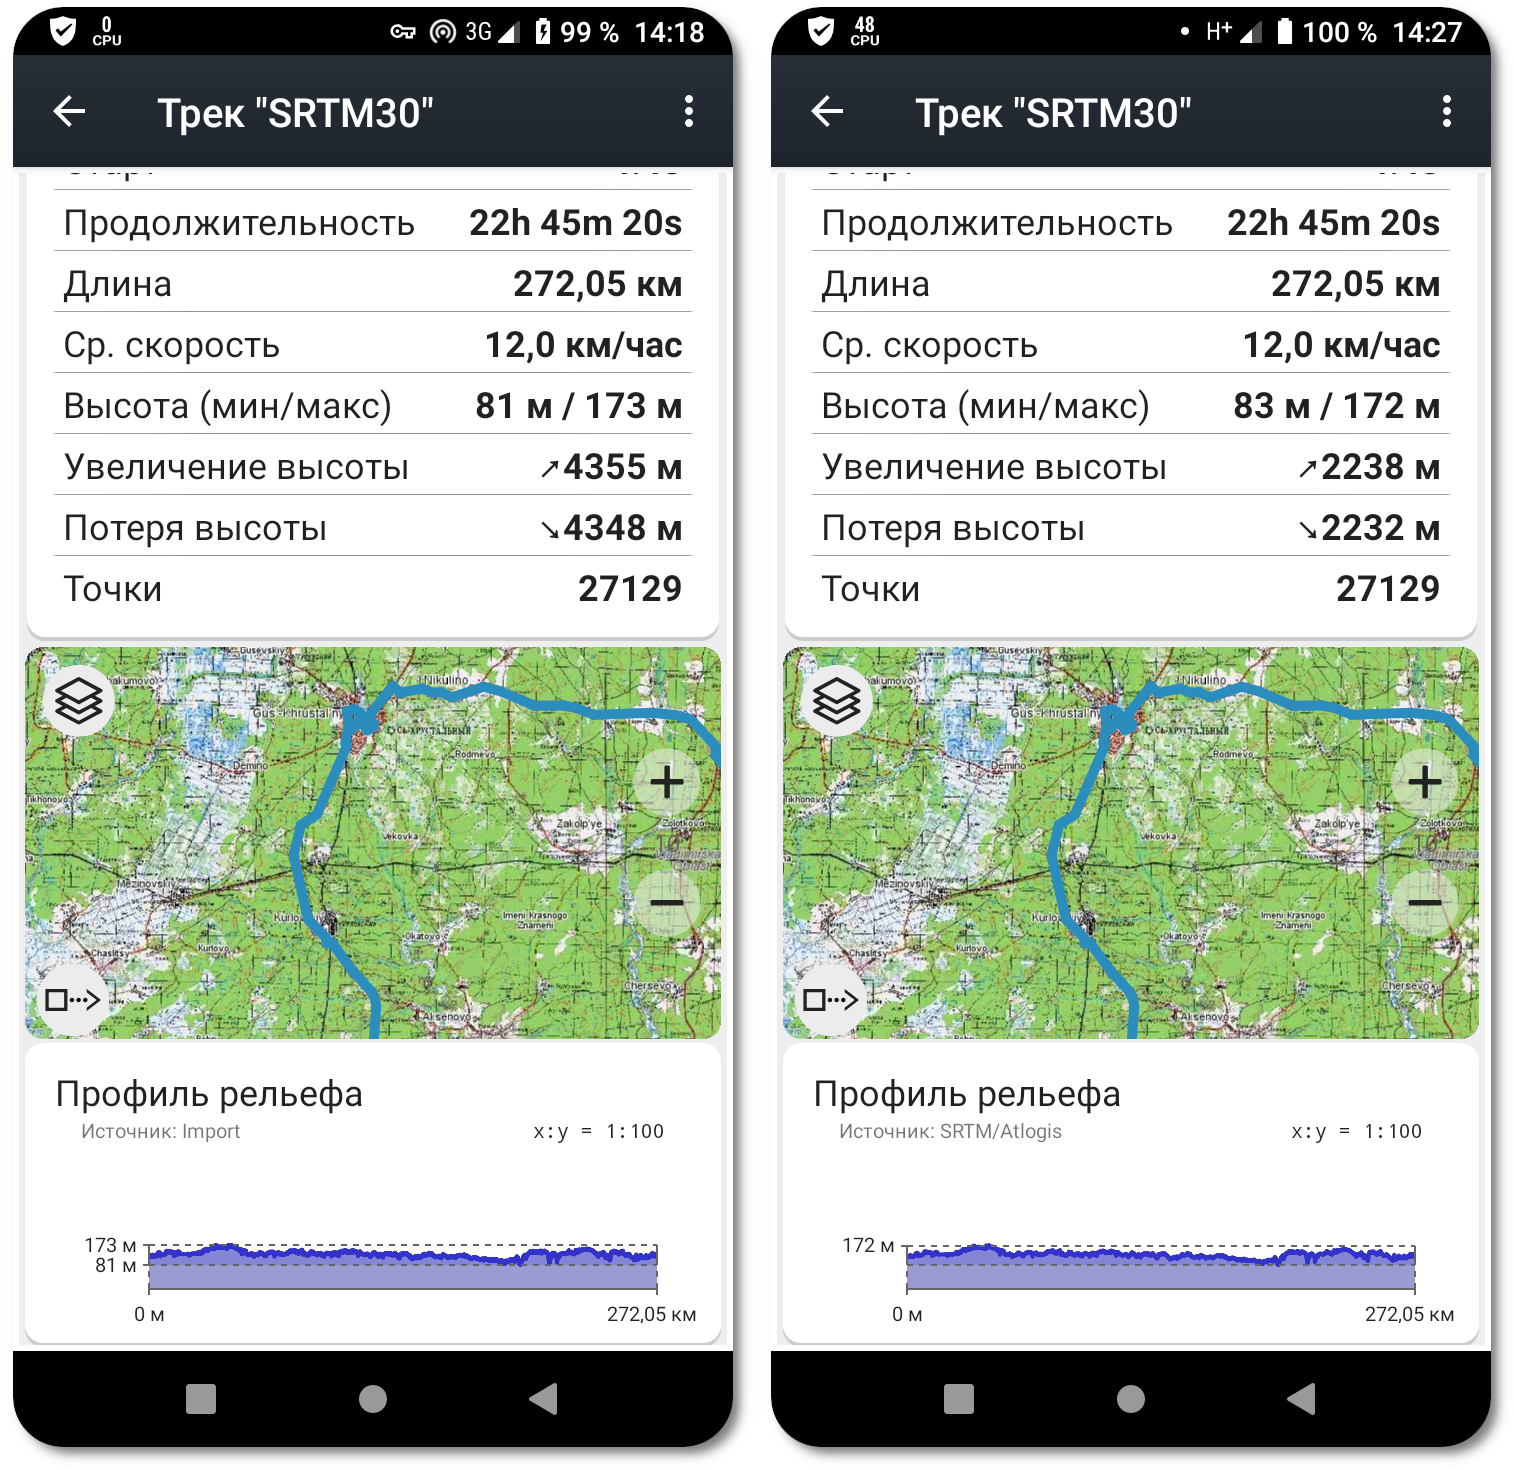 Приложение на Android: Советские военные карты.
Один и тот же трек. Слева — данные СНВ SRTM30, справа постобработка СНВ приложением с погрешностью относительно STRAVA ↑ 124%.